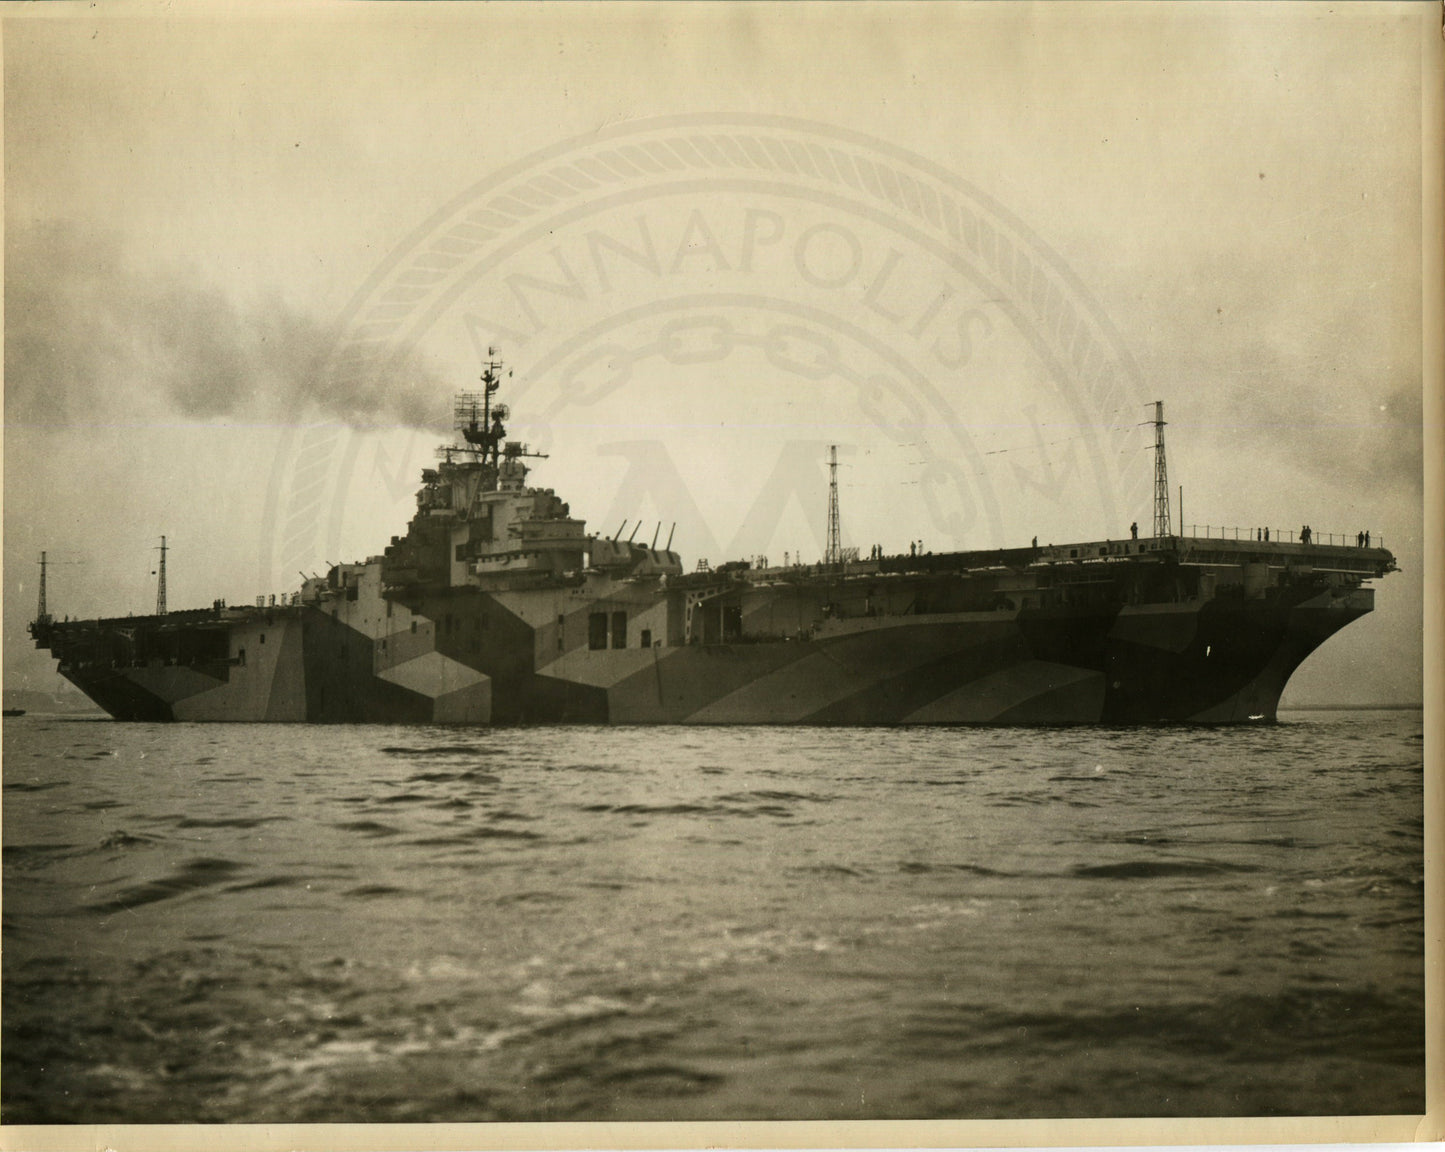 Official Navy Photo of WWII era USS Bunker Hill (CV-17) Aircraft Carrier